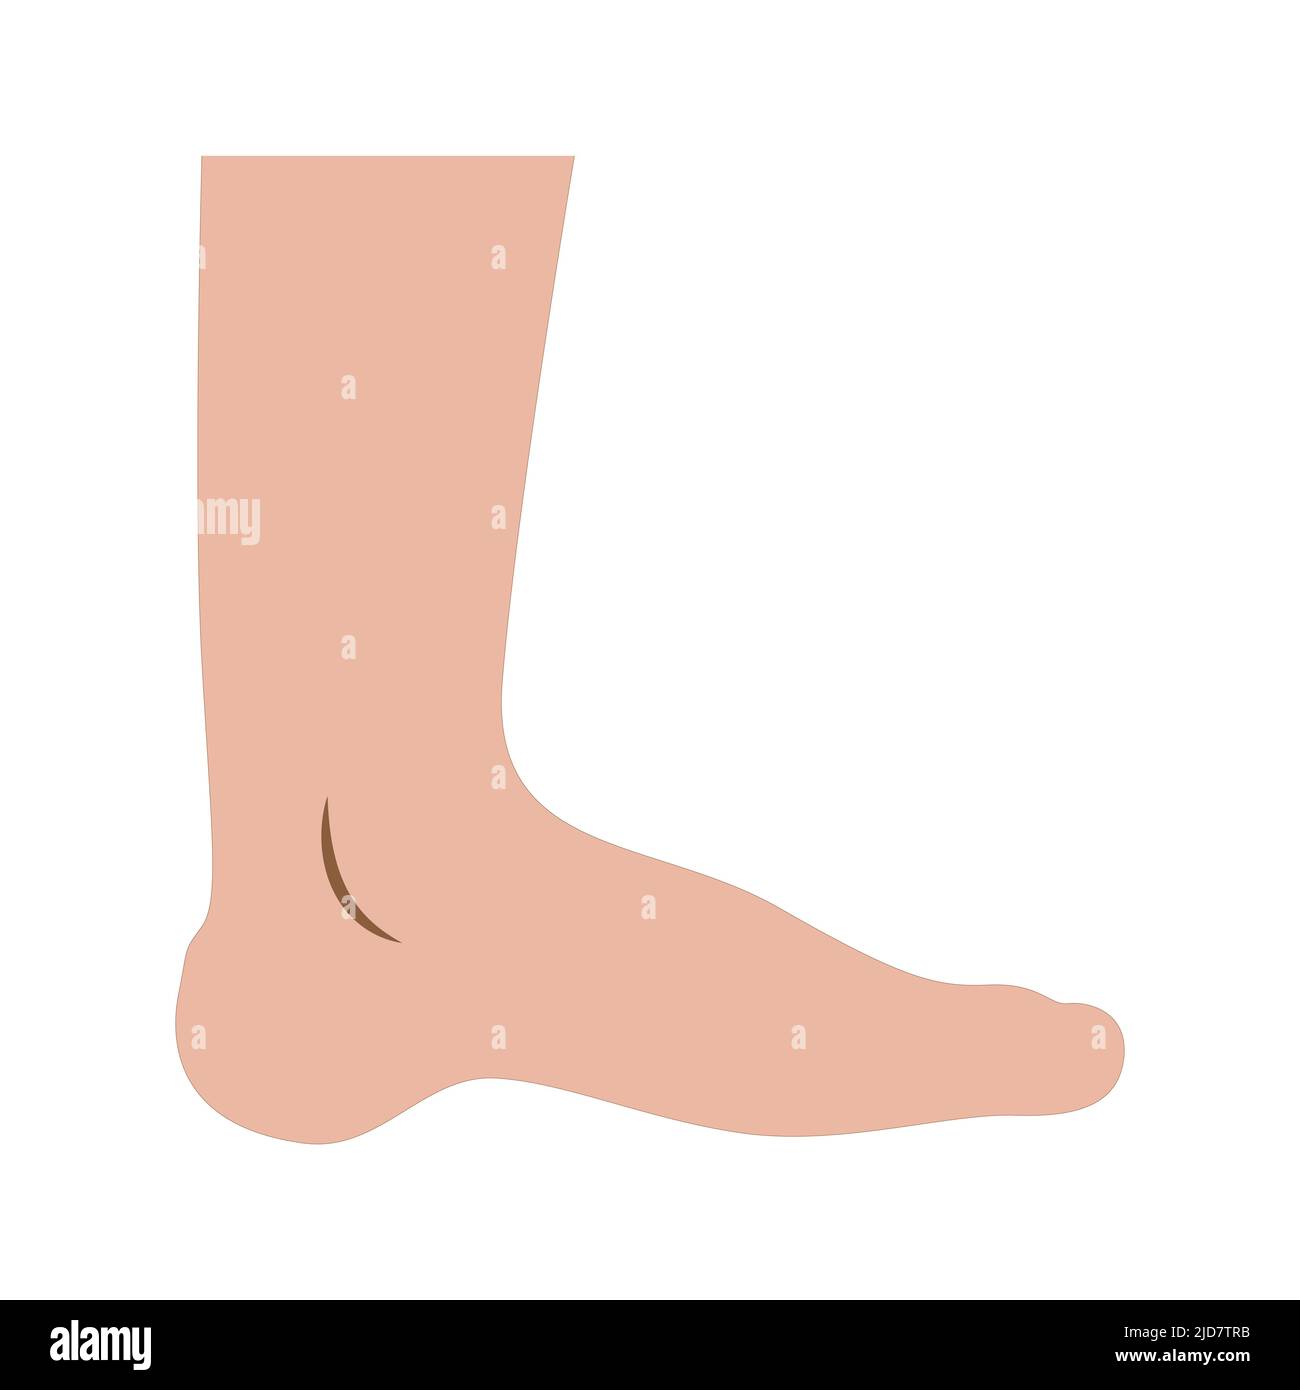 human leg. Vector illustration. on white background Stock Vector